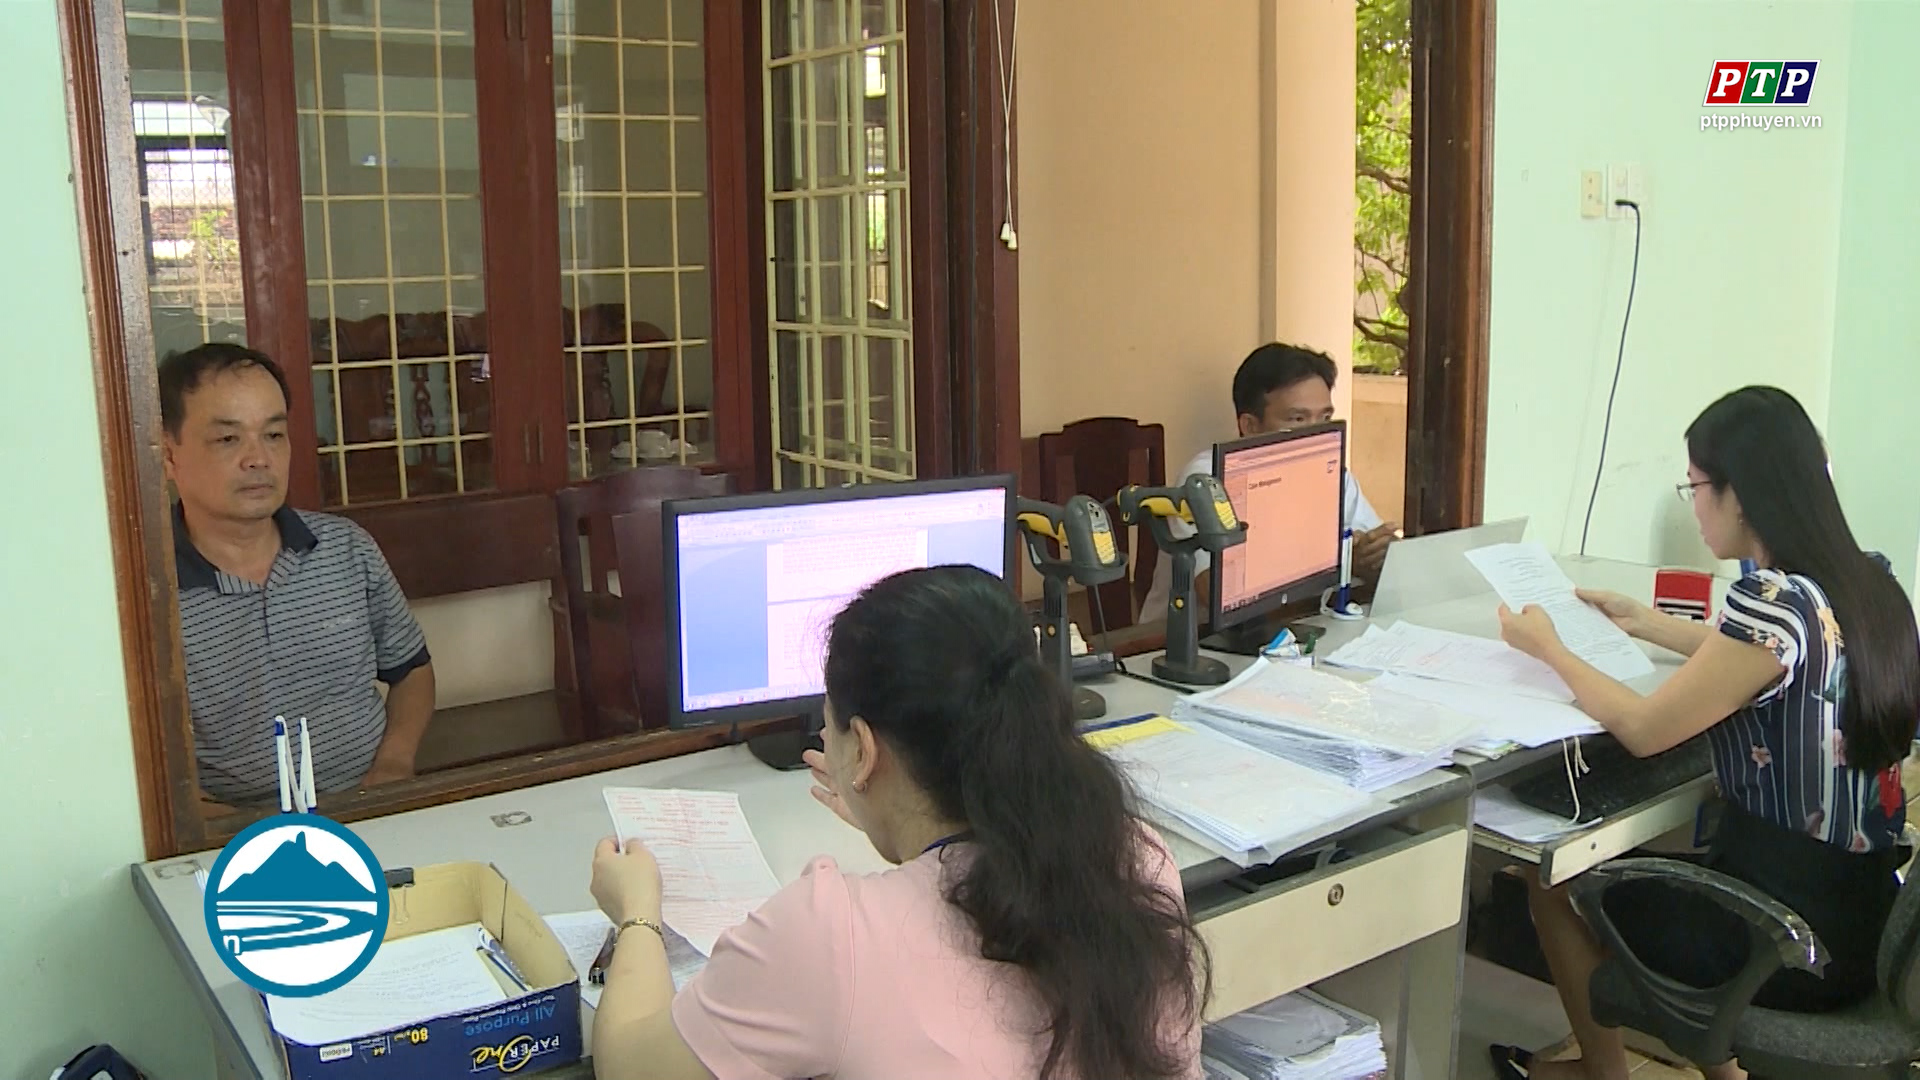 Ngành Thuế Phú Yên tăng cường thực hiện thắng lợi nhiệm vụ, đóng góp cho địa phương